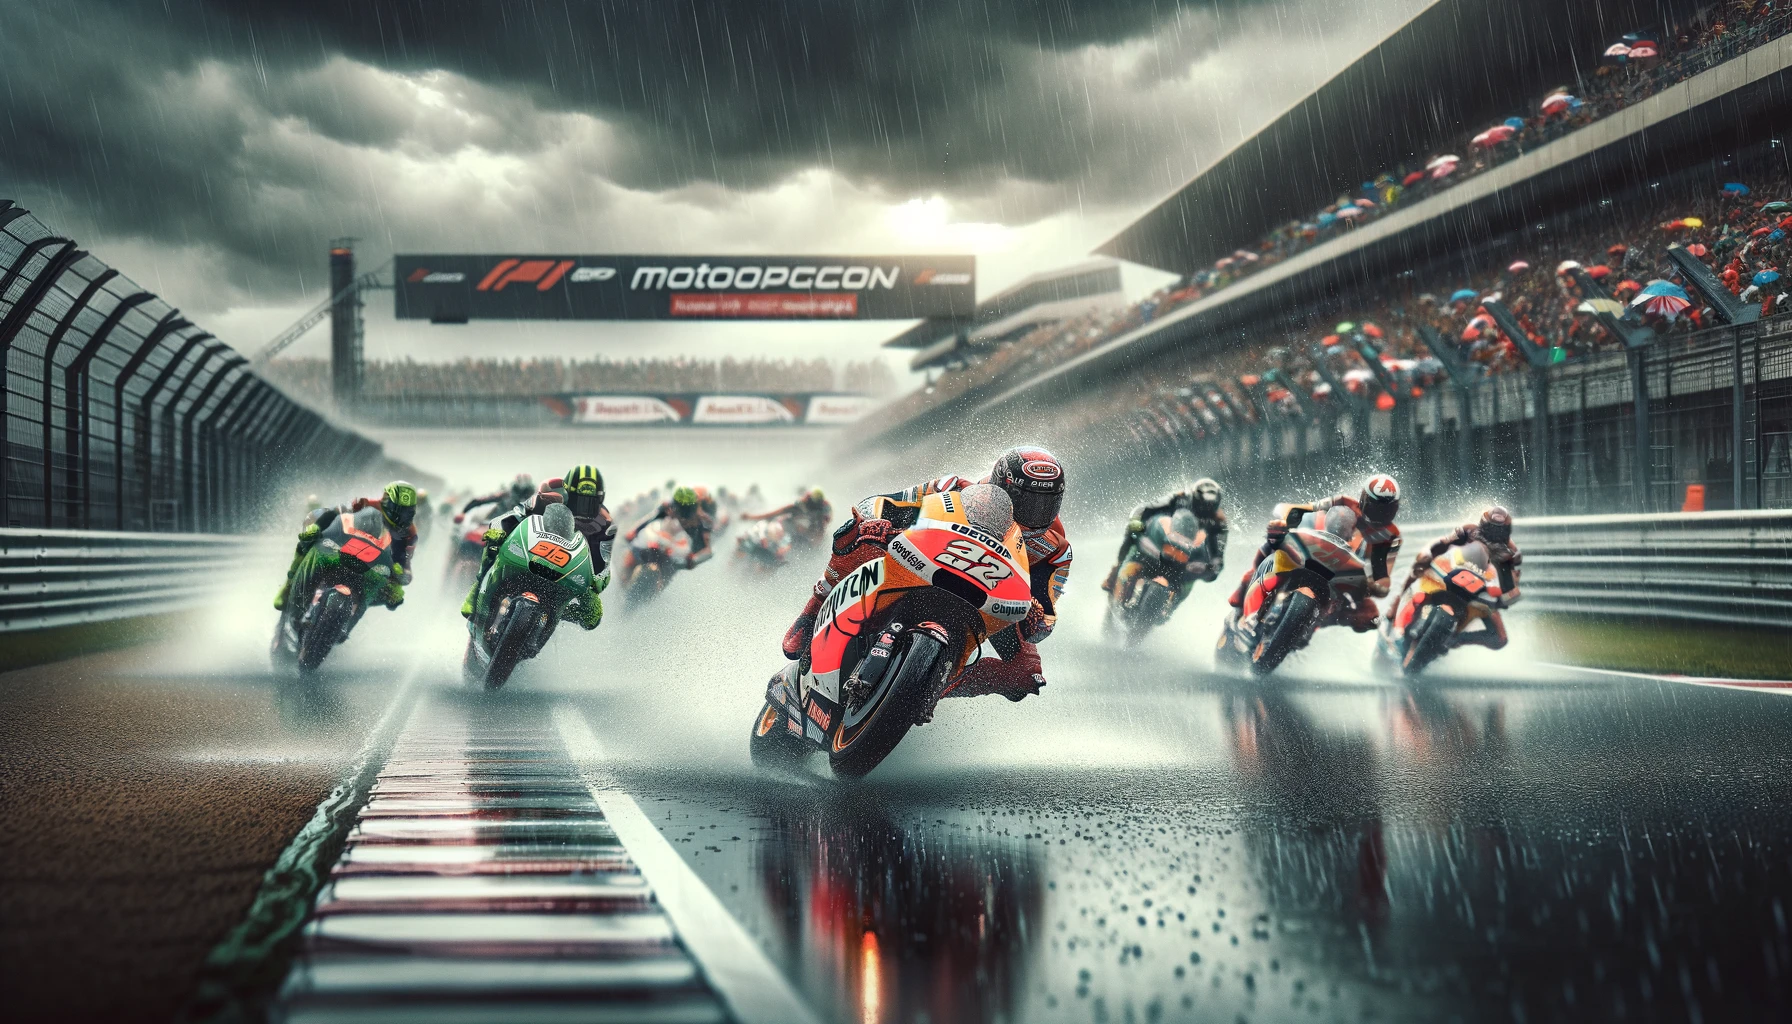 Racing scene of the MotoGP